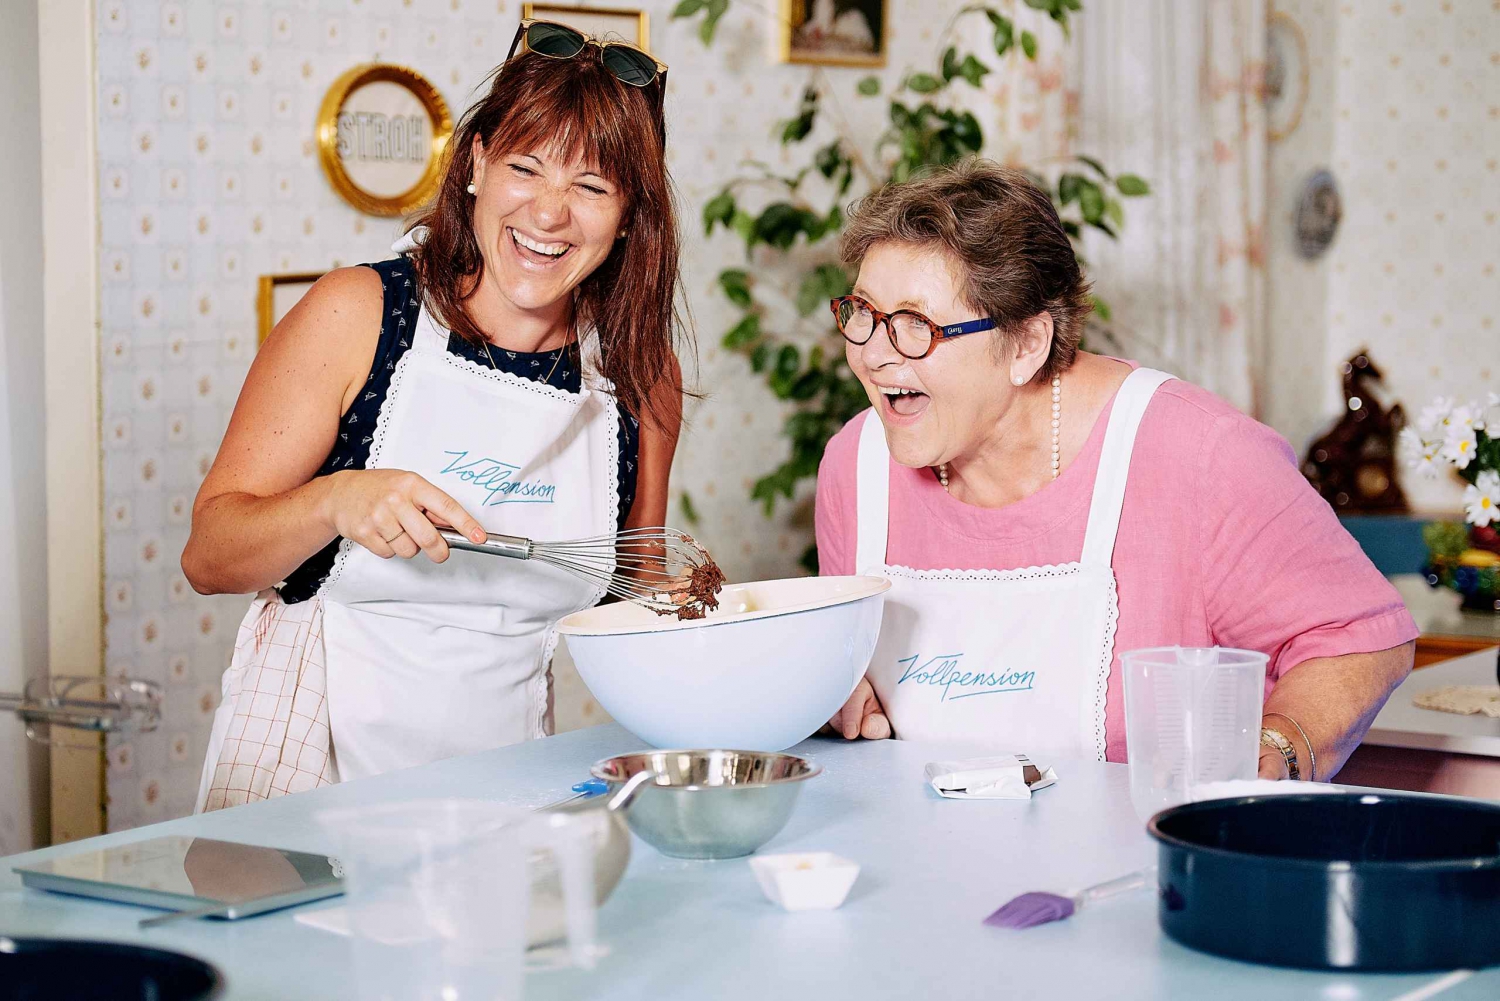 Wien bager med bedstemor: Apfelstrudel-undervisning